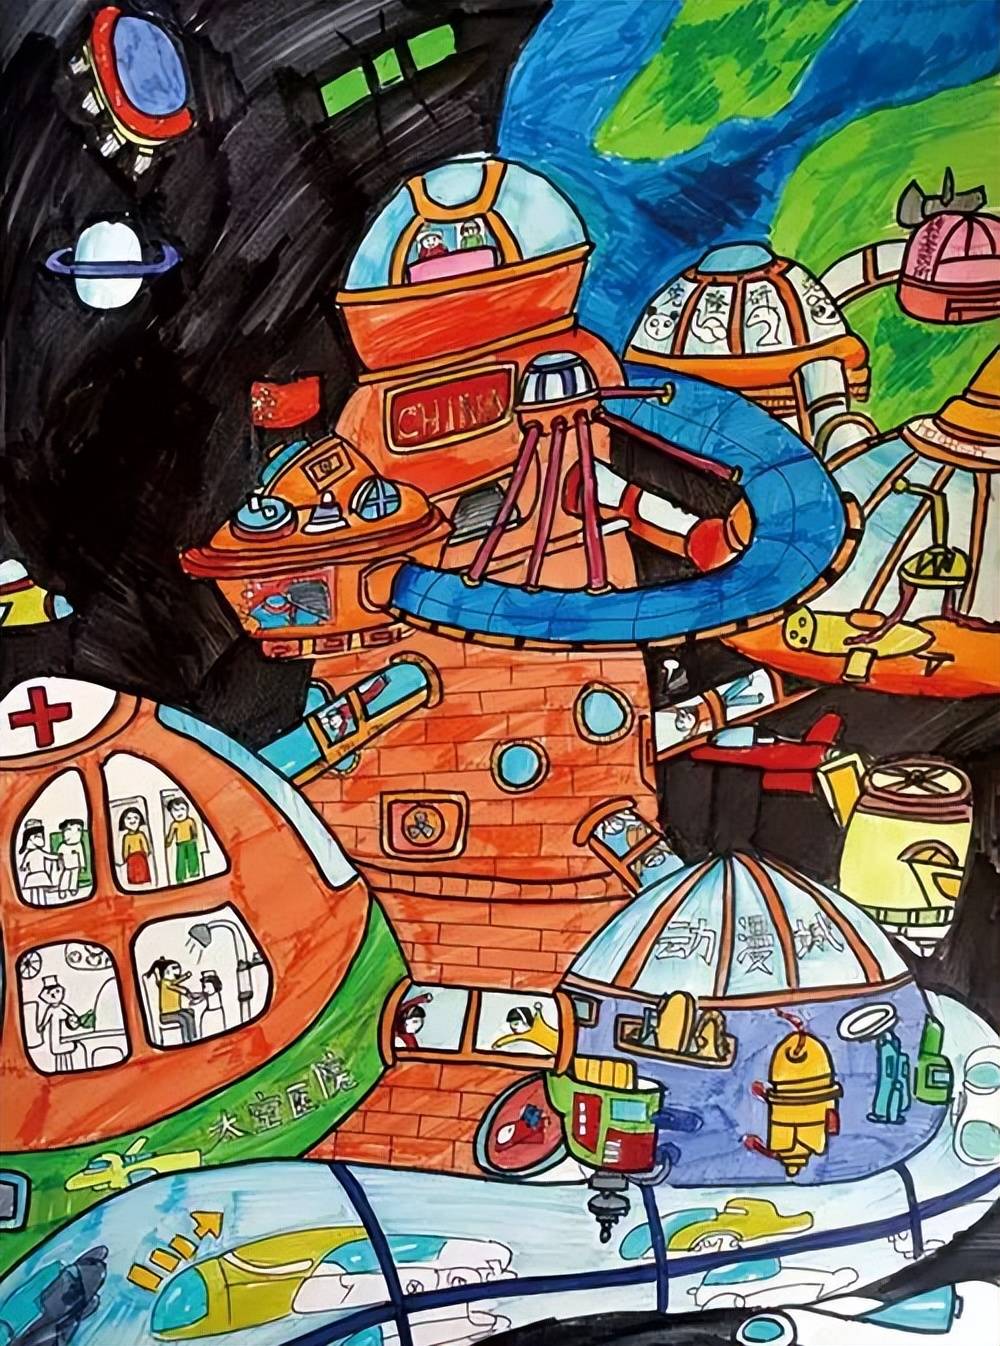 少儿画苑第35届国际少儿书画大赛征稿倒计时来看世界获奖儿童画